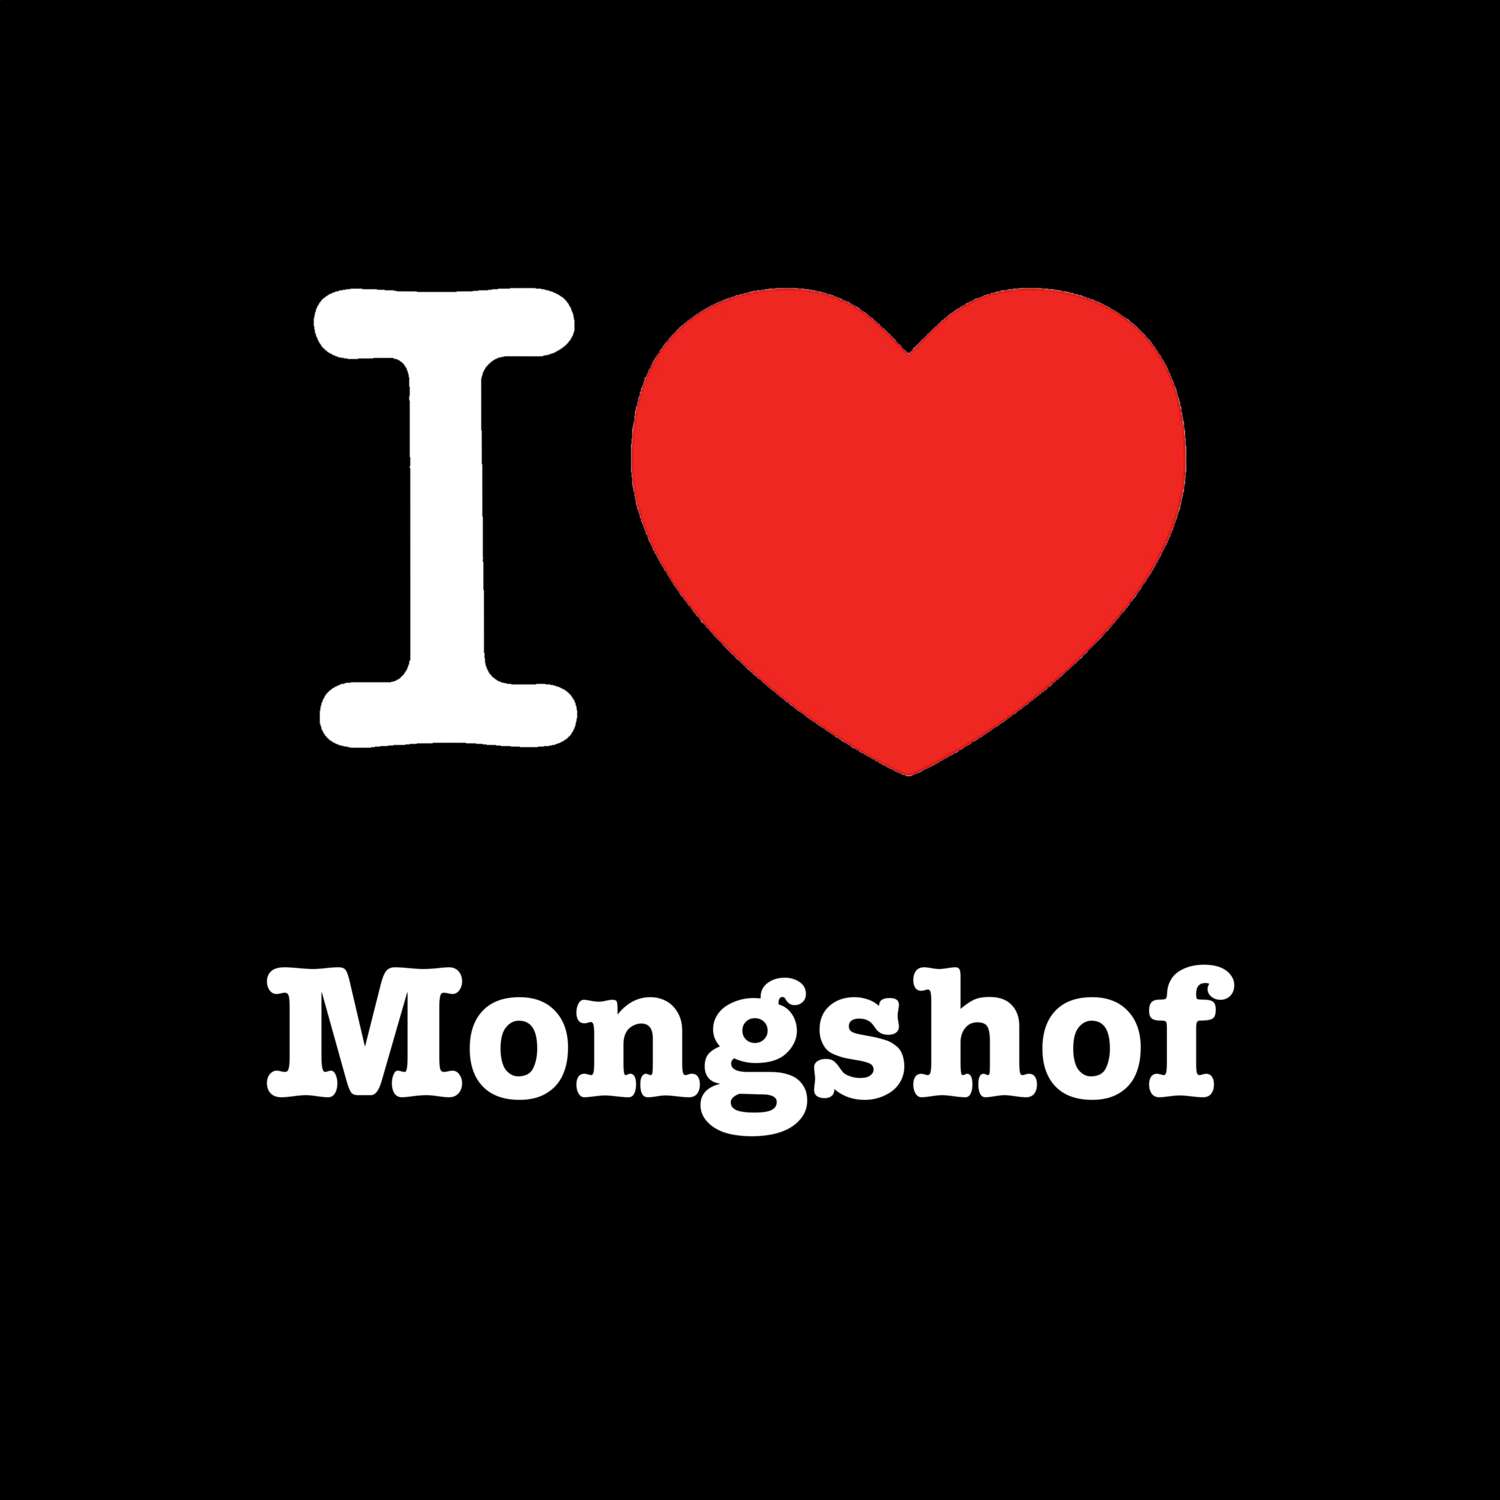 Mongshof T-Shirt »I love«